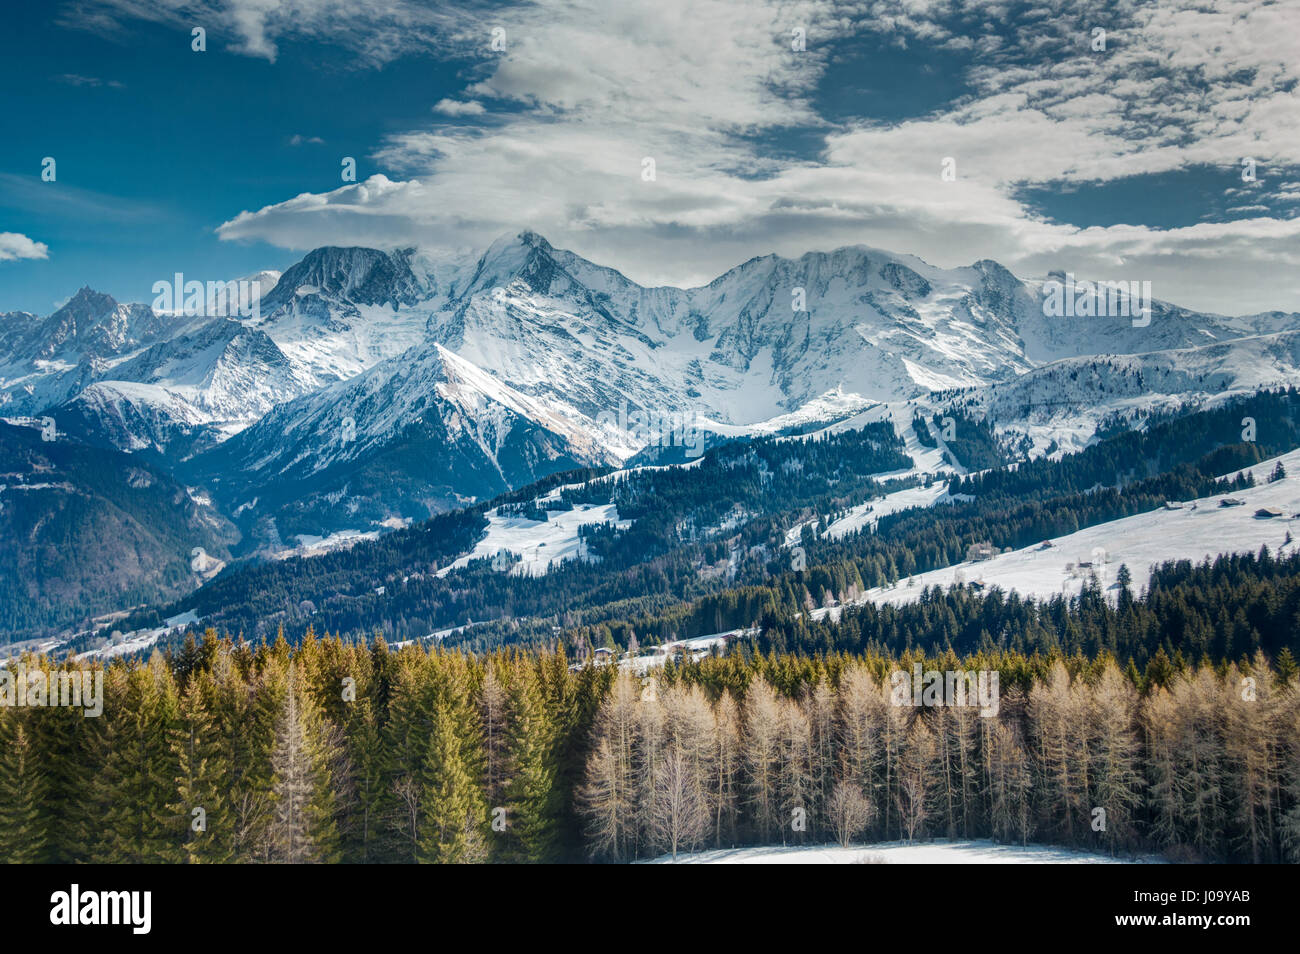 Alte montagne innevate e nuvole basse nella distanza con alberi in primo piano nelle Alpi francesi, Mont Blanc, area di Chamonix. Foto Stock